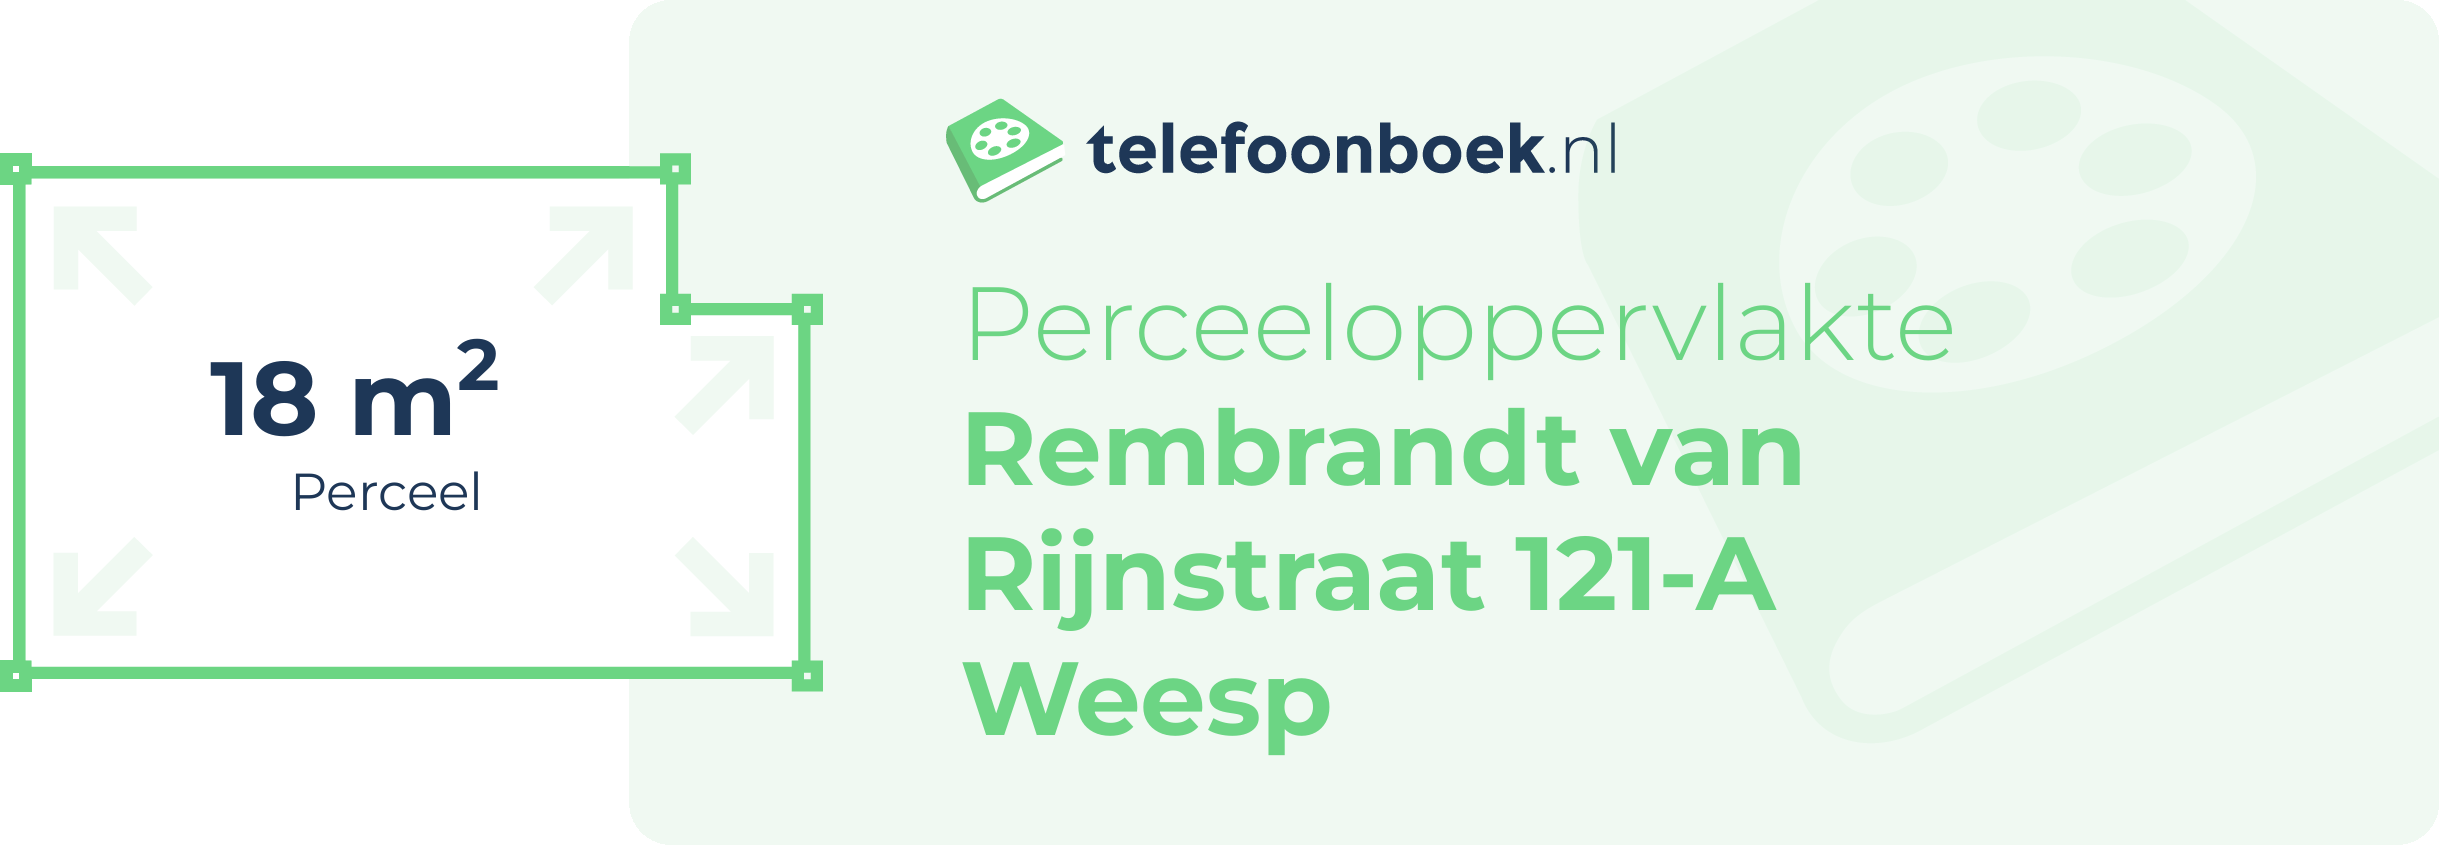 Perceeloppervlakte Rembrandt Van Rijnstraat 121-A Weesp